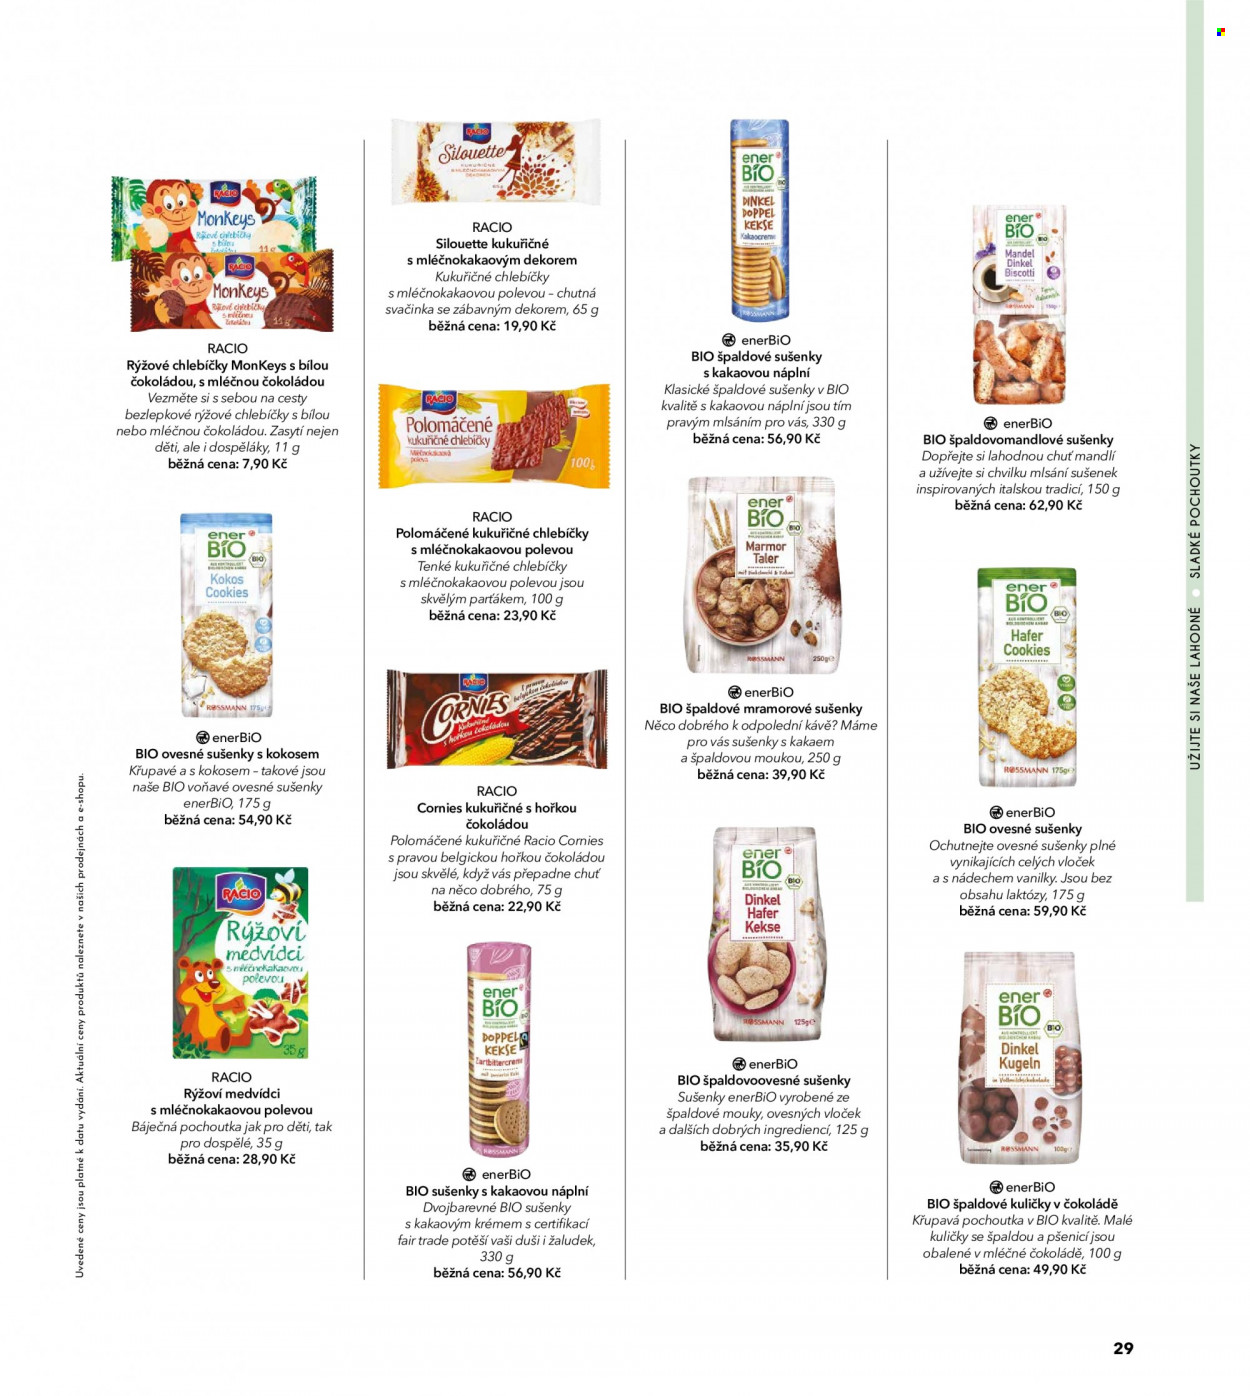 thumbnail - Leták ROSSMANN - Produkty v akci - kukuřičné chlebíčky, rýžové chlebíčky, Racio, Pochoutka, enerBiO, polomáčené sušenky, sušenky, ovesné sušenky, pamlsky. Strana 31.